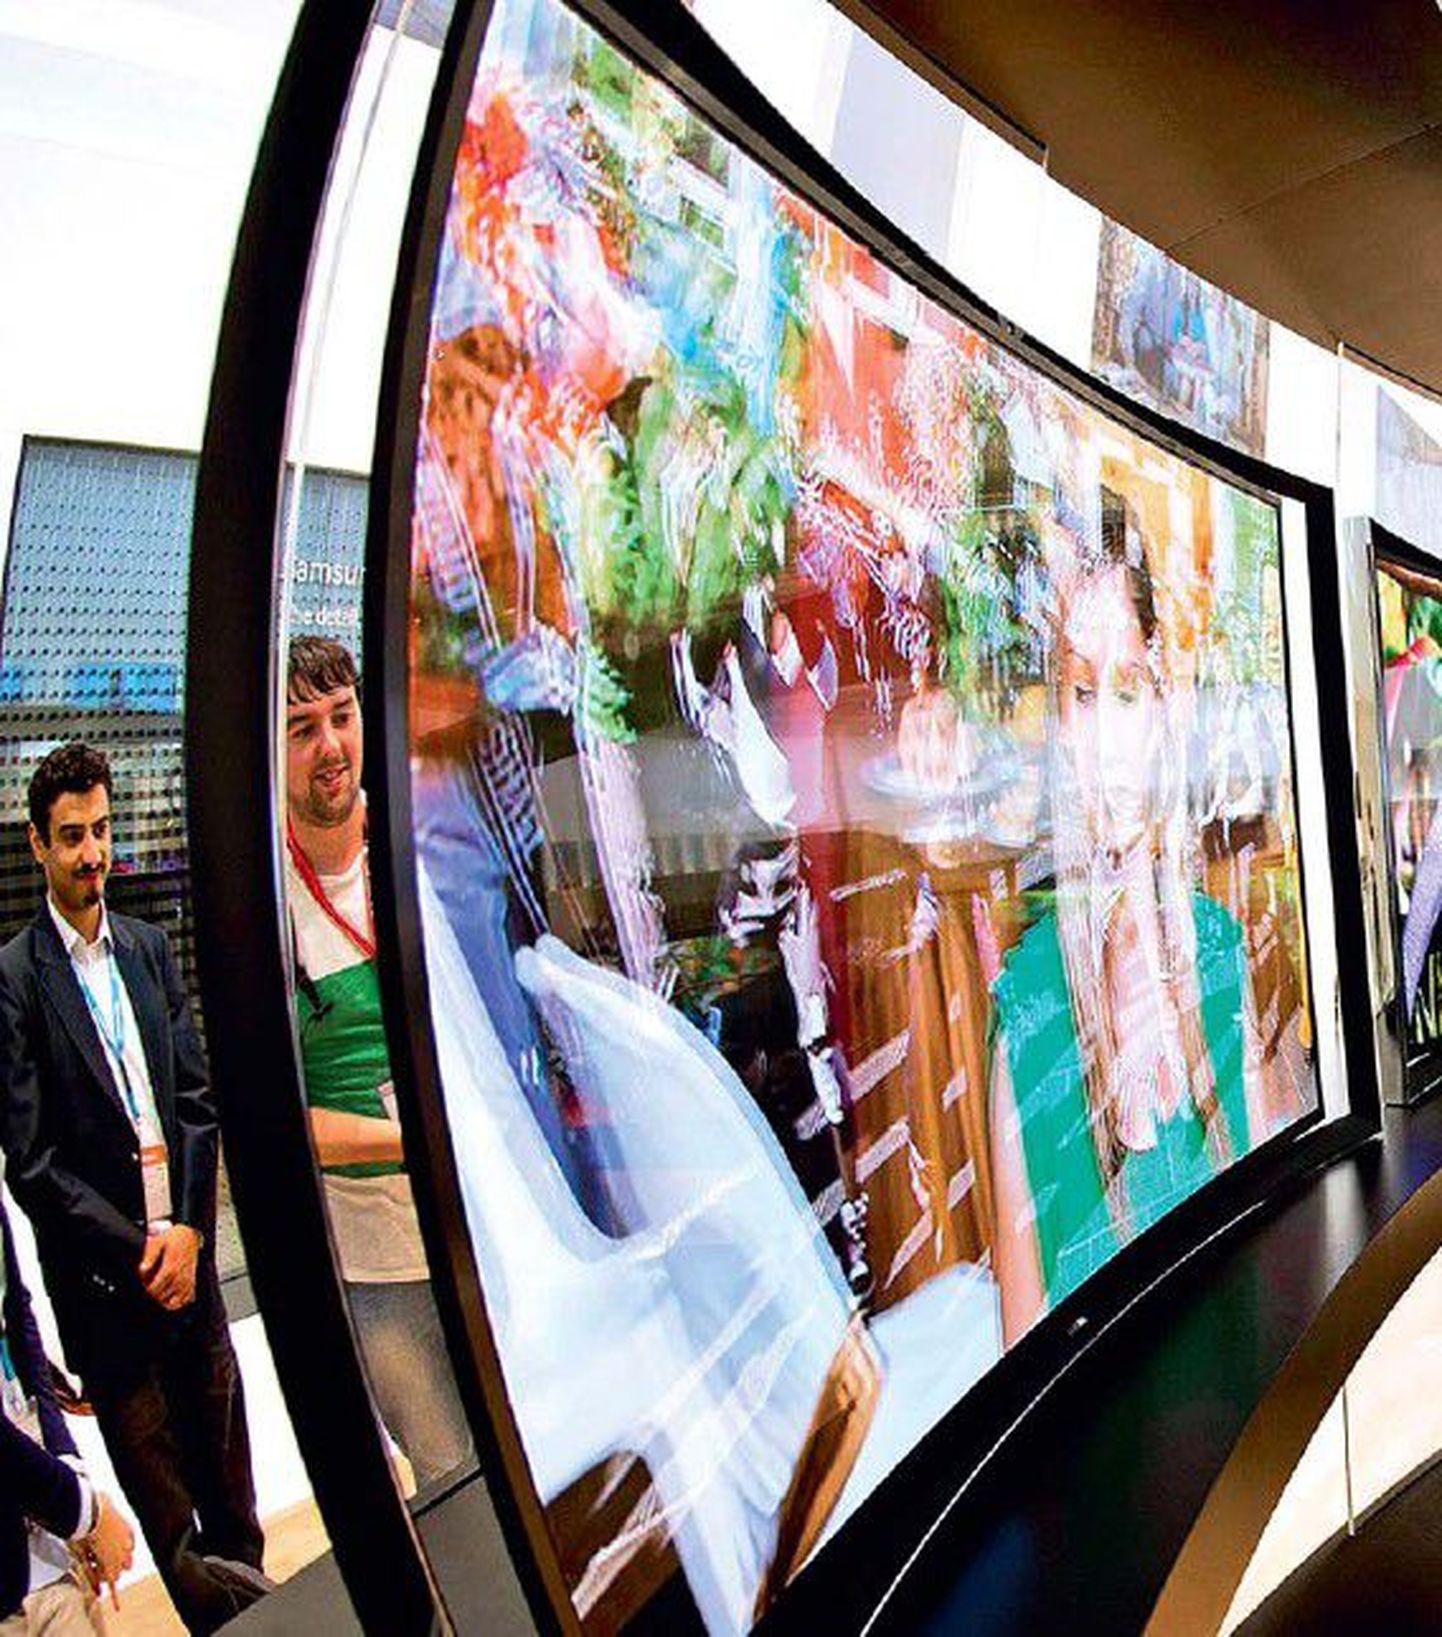 Samsungi OLED-tehnoloogiaga kumera ekraaniga teler.